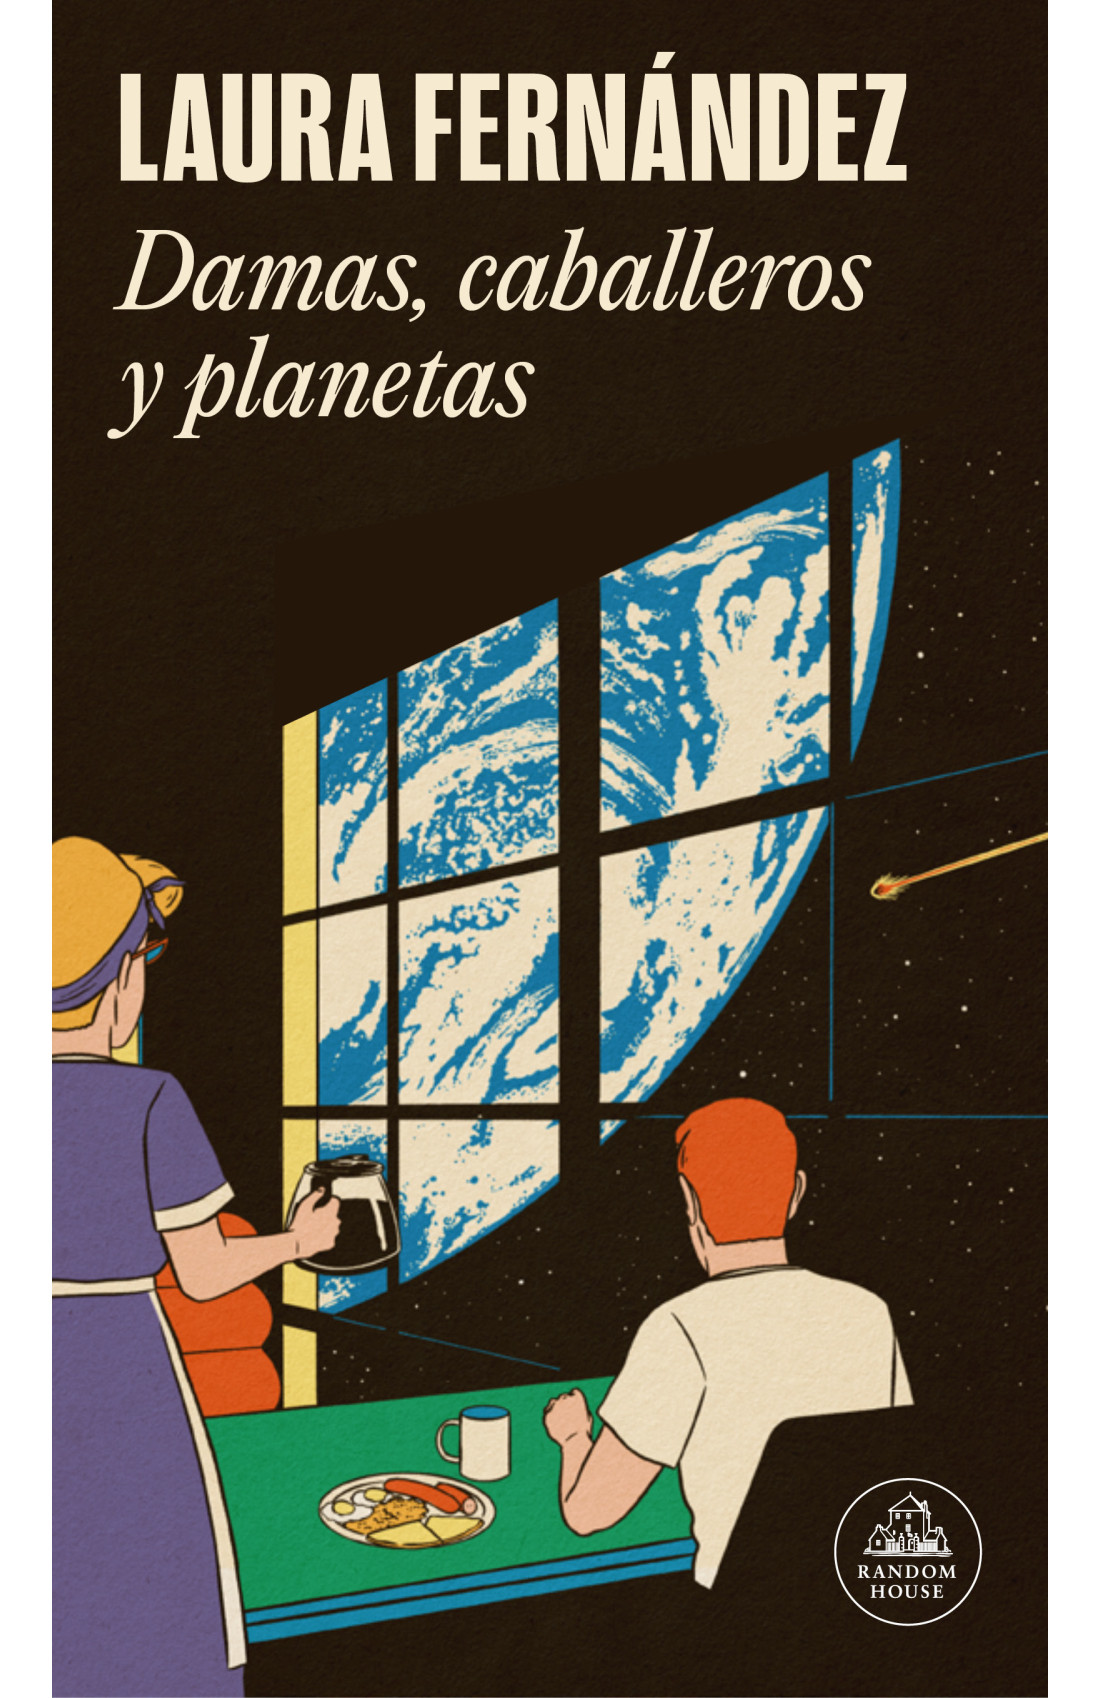 Laura Fernández presenta "Damas, caballeros y planetas"